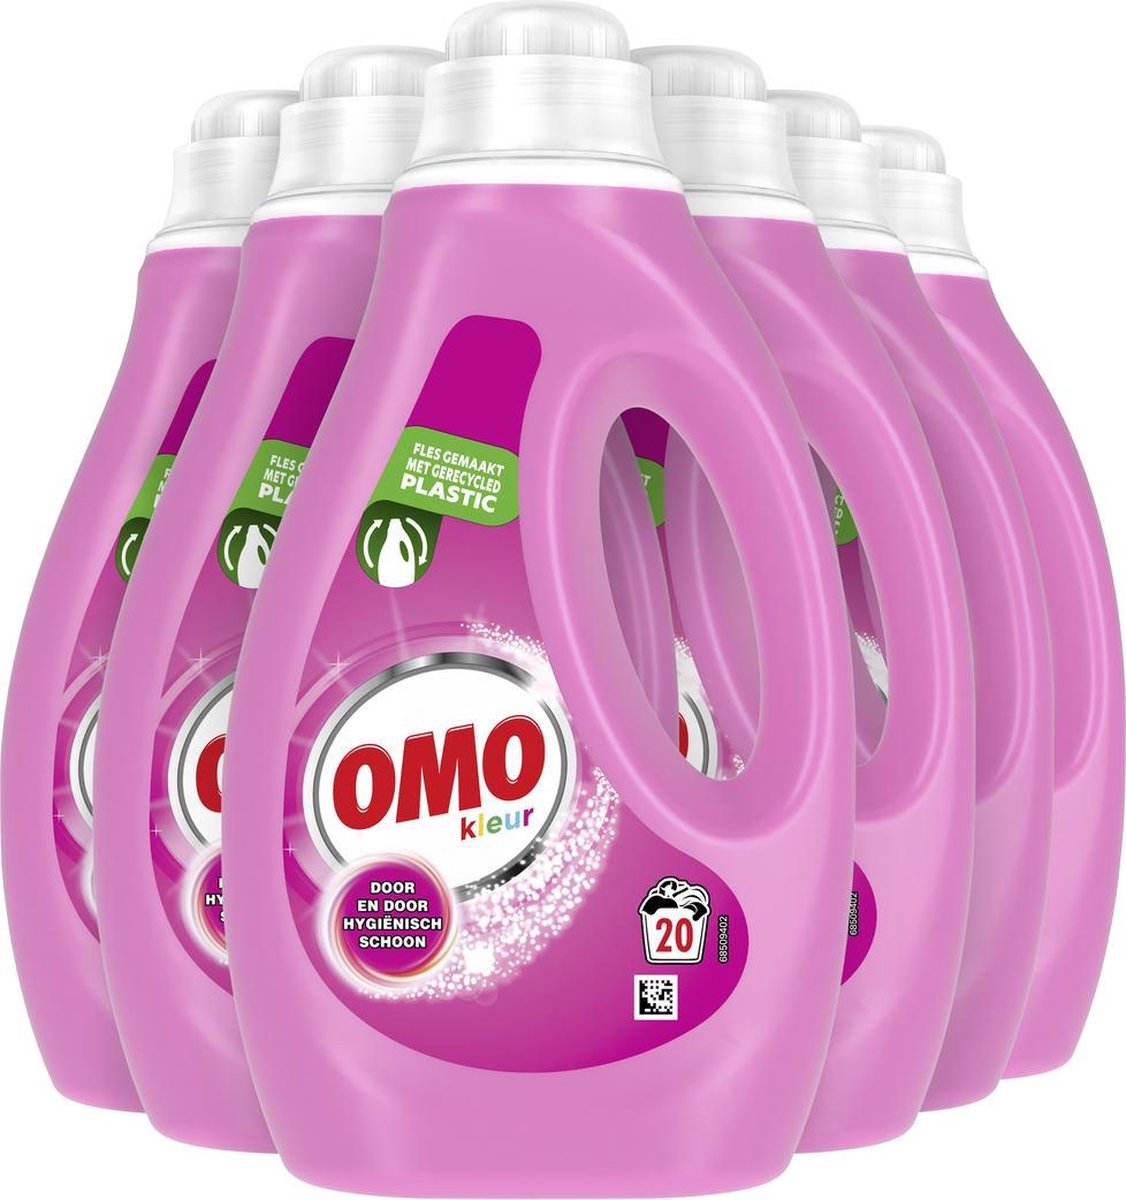 Omo Kleur Vloeibaar Wasmiddel - 6 x 20 wasbeurten - Voordeelverpakking